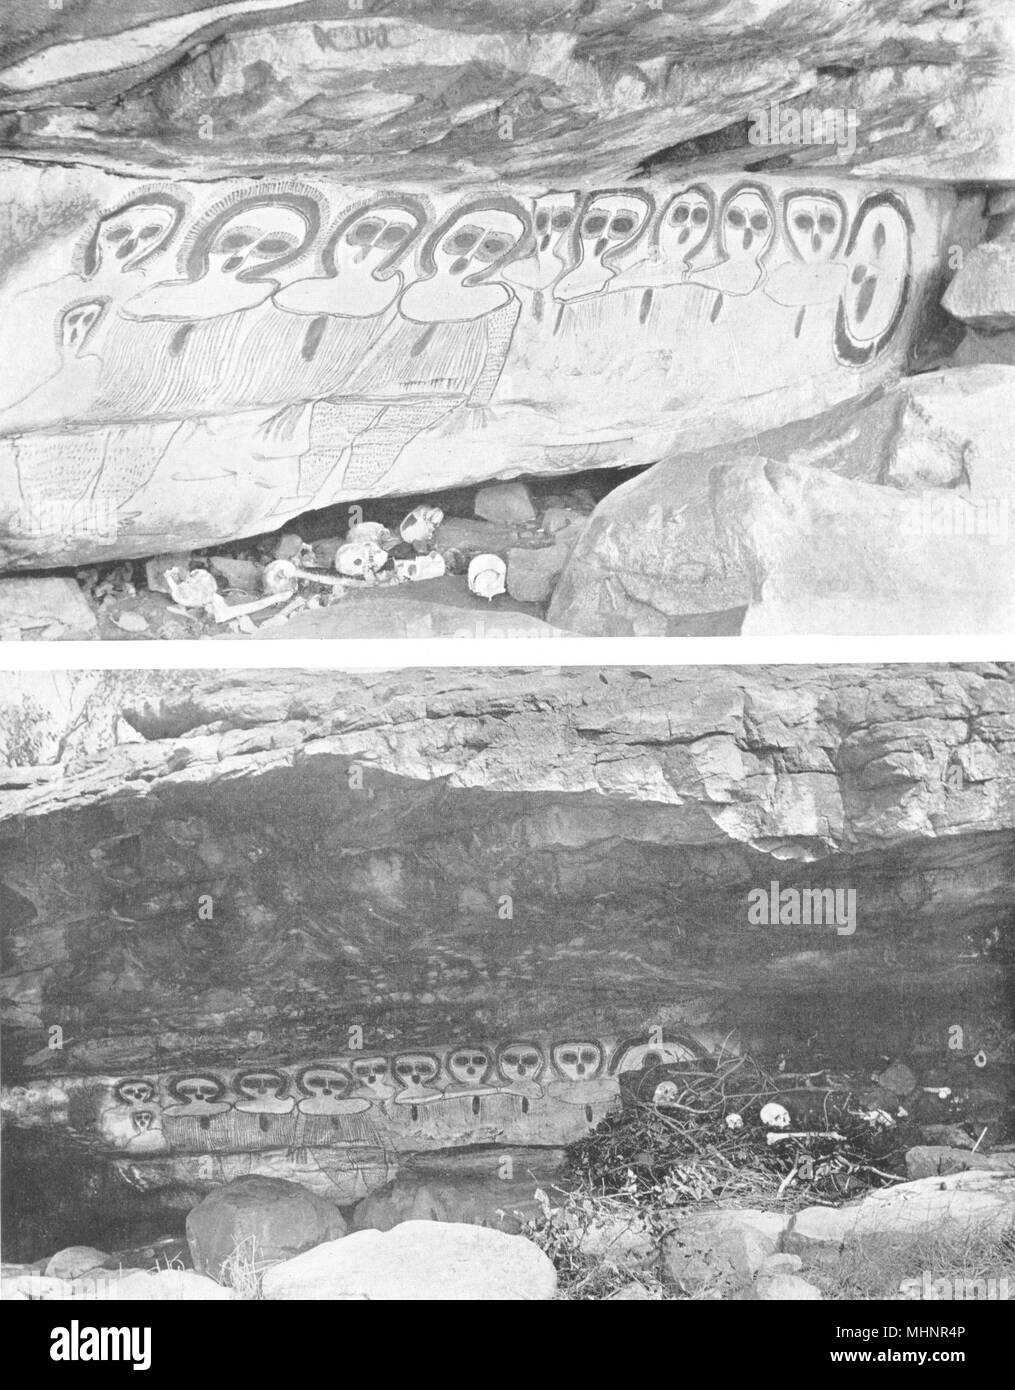 AUSTRALIA. Australia. La sepoltura Cave-North-Australia occidentale; 1900 antica stampa Foto Stock